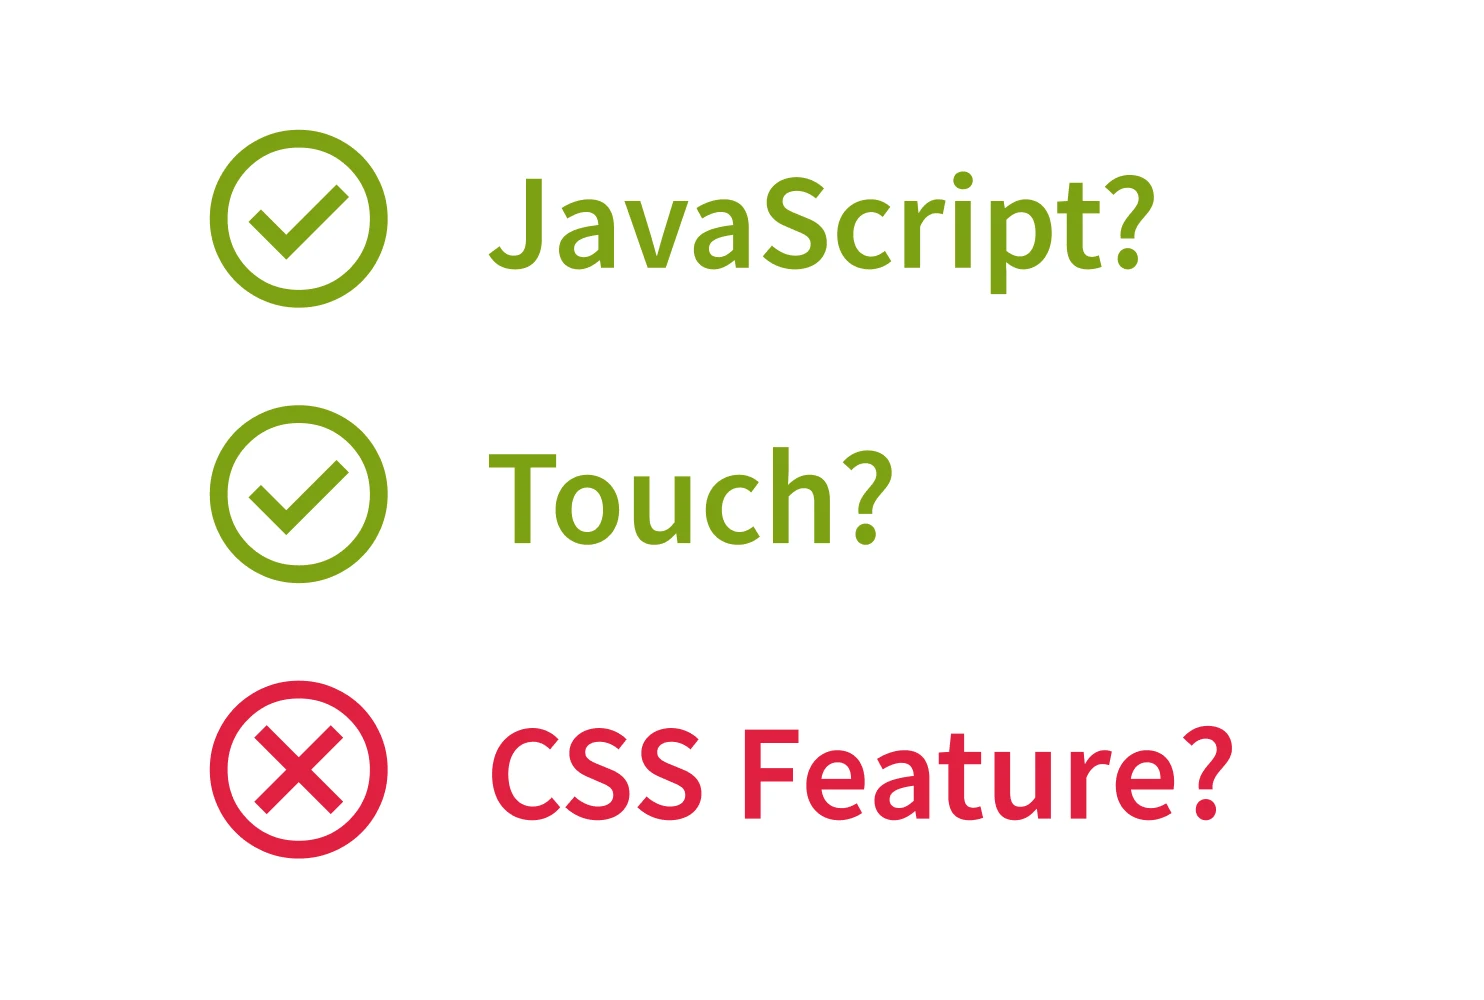 Stilisierte Grafik mit zwei grünen Haken bei den Funktionabfragen nach Touch bzw. JavaScript und einem roten Kreuz bei der Abfrage nach CSS Feature